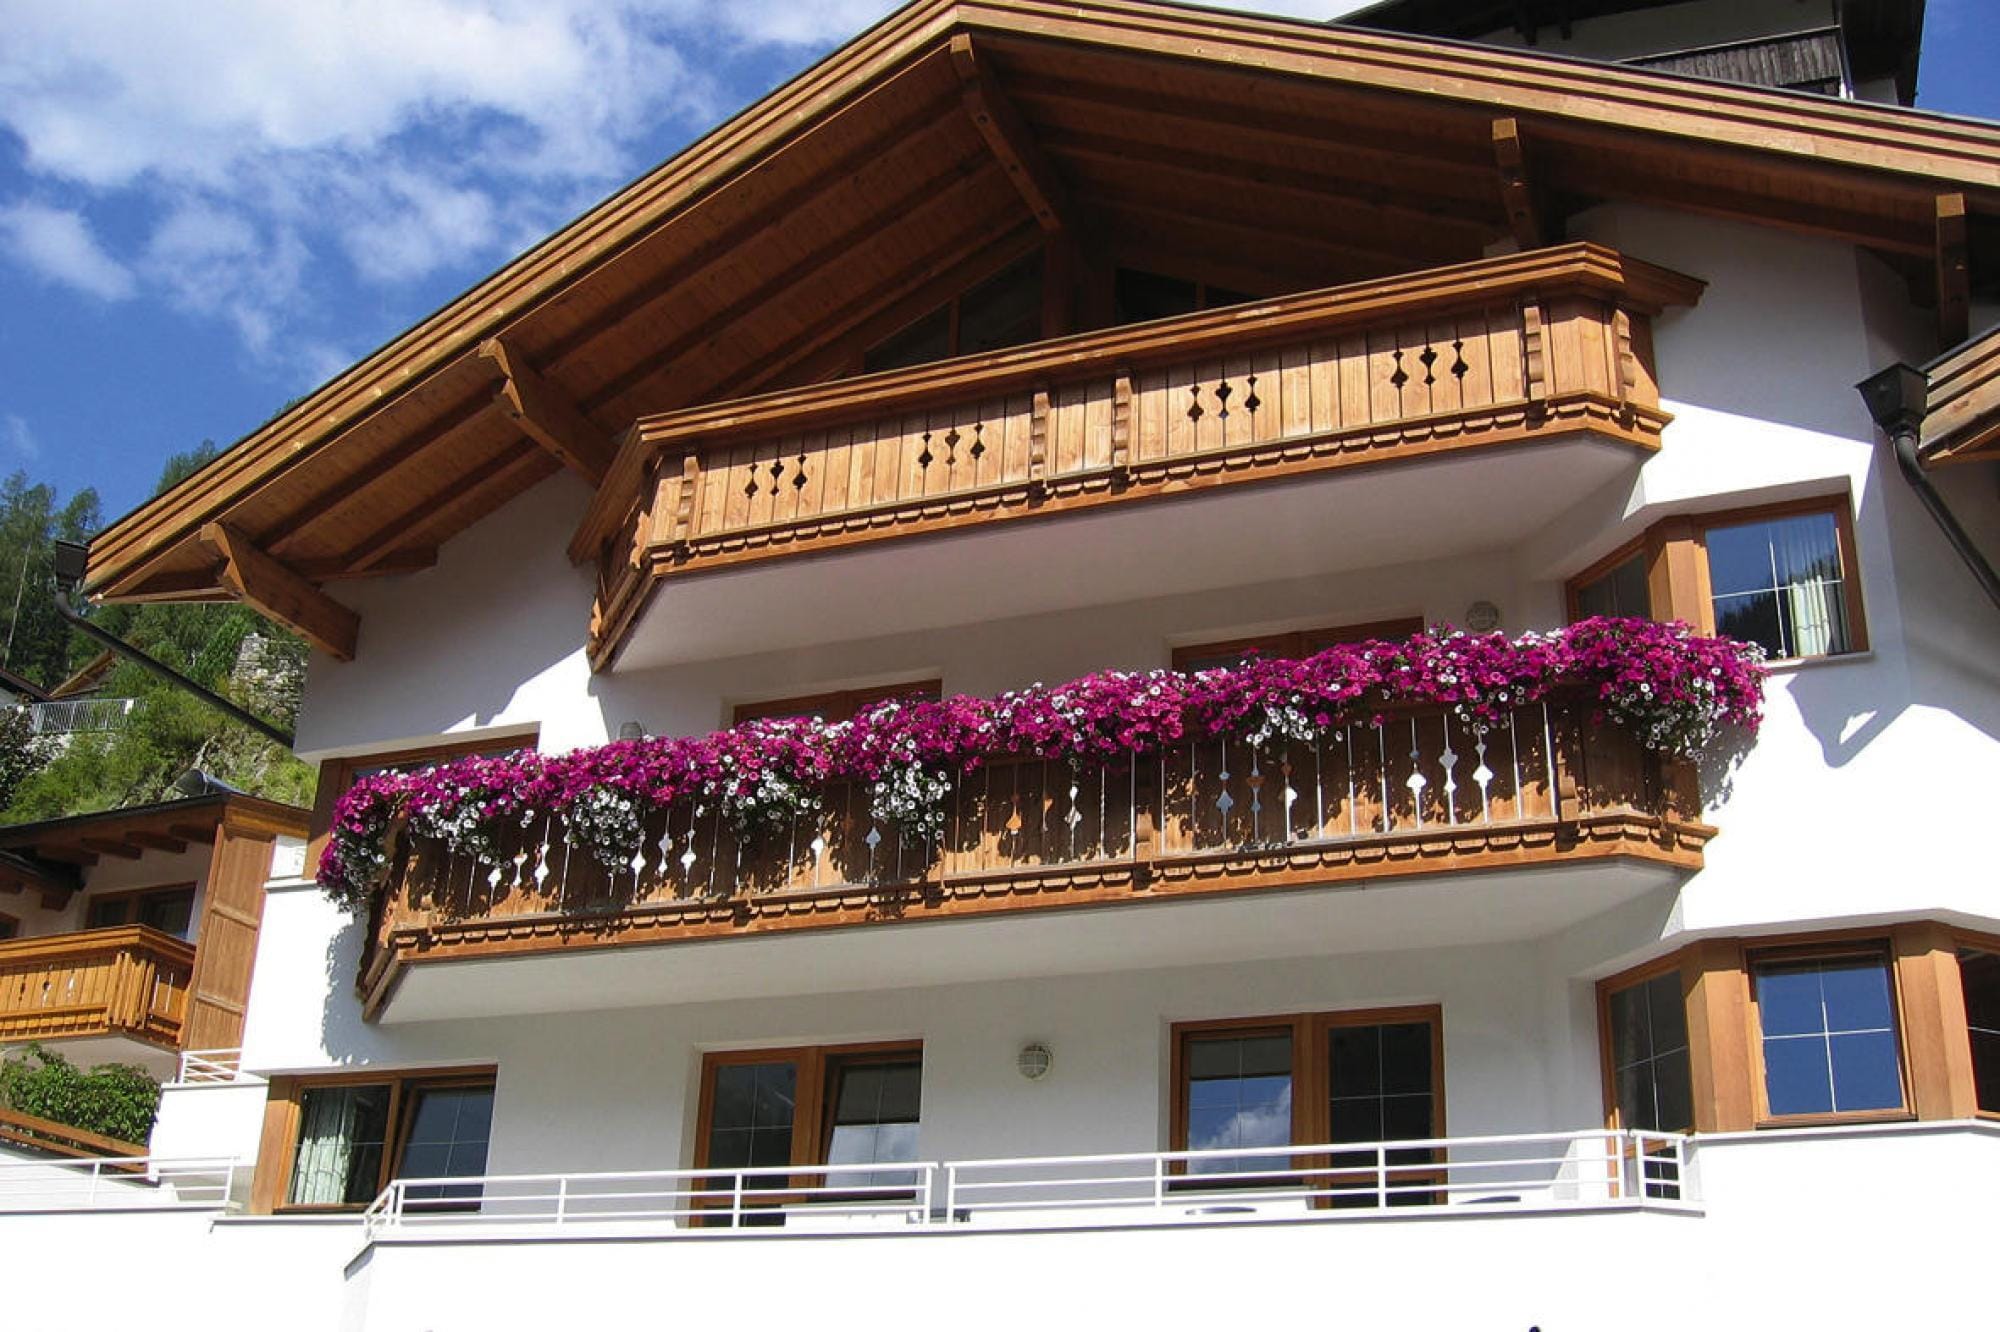 Wohnung in St. Anton am Arlberg mit Balkon